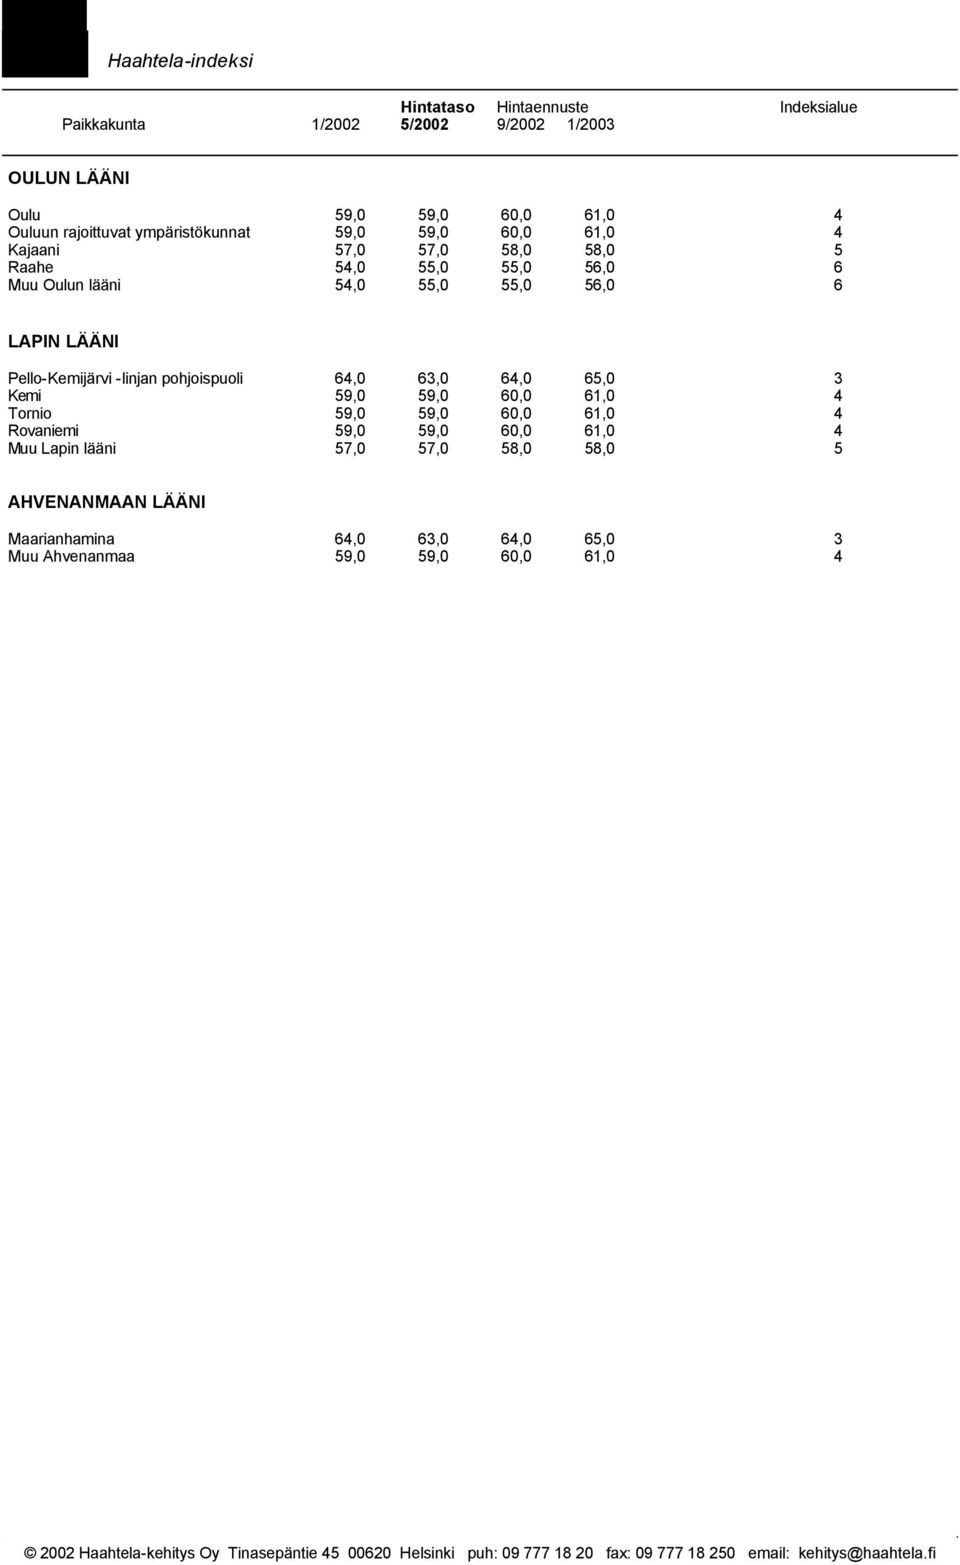 LAPIN LÄÄNI Pello-Kemijärvi -linjan pohjoispuoli 64,0 63,0 64,0 65,0 3 Kemi 59,0 59,0 60,0 61,0 4 Tornio 59,0 59,0 60,0 61,0 4 Rovaniemi